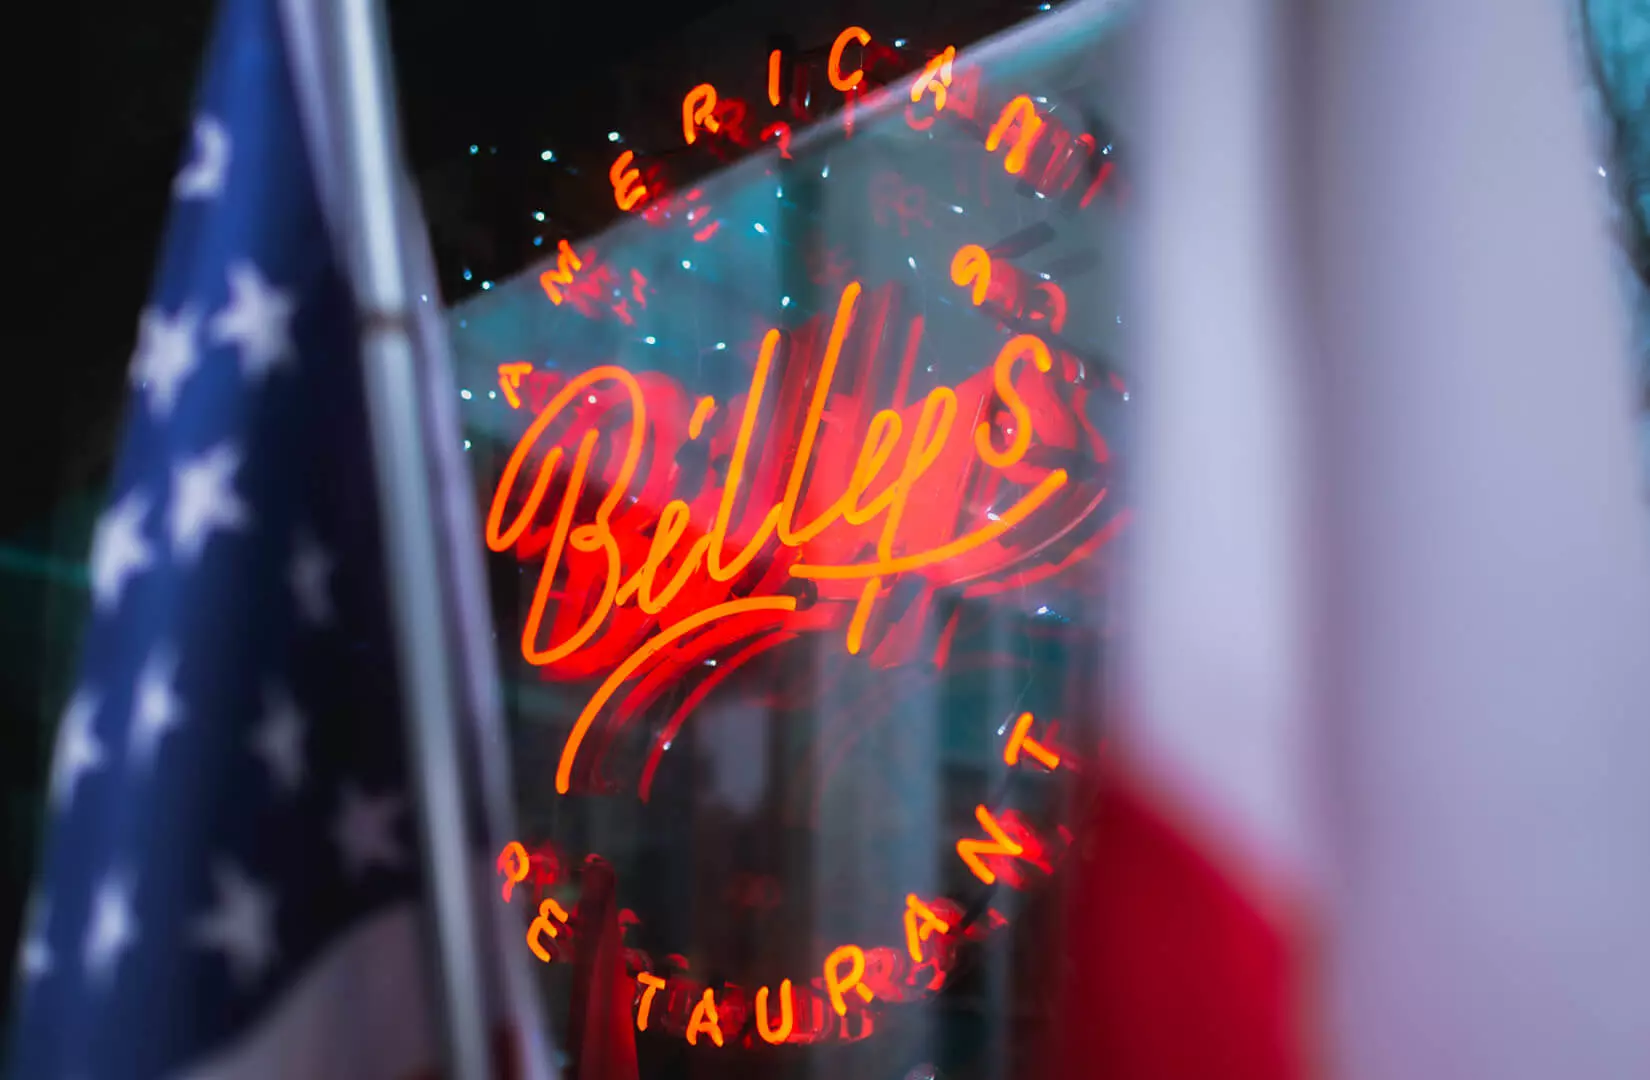 Billy's - Insegna al neon rossa in un ristorante americano